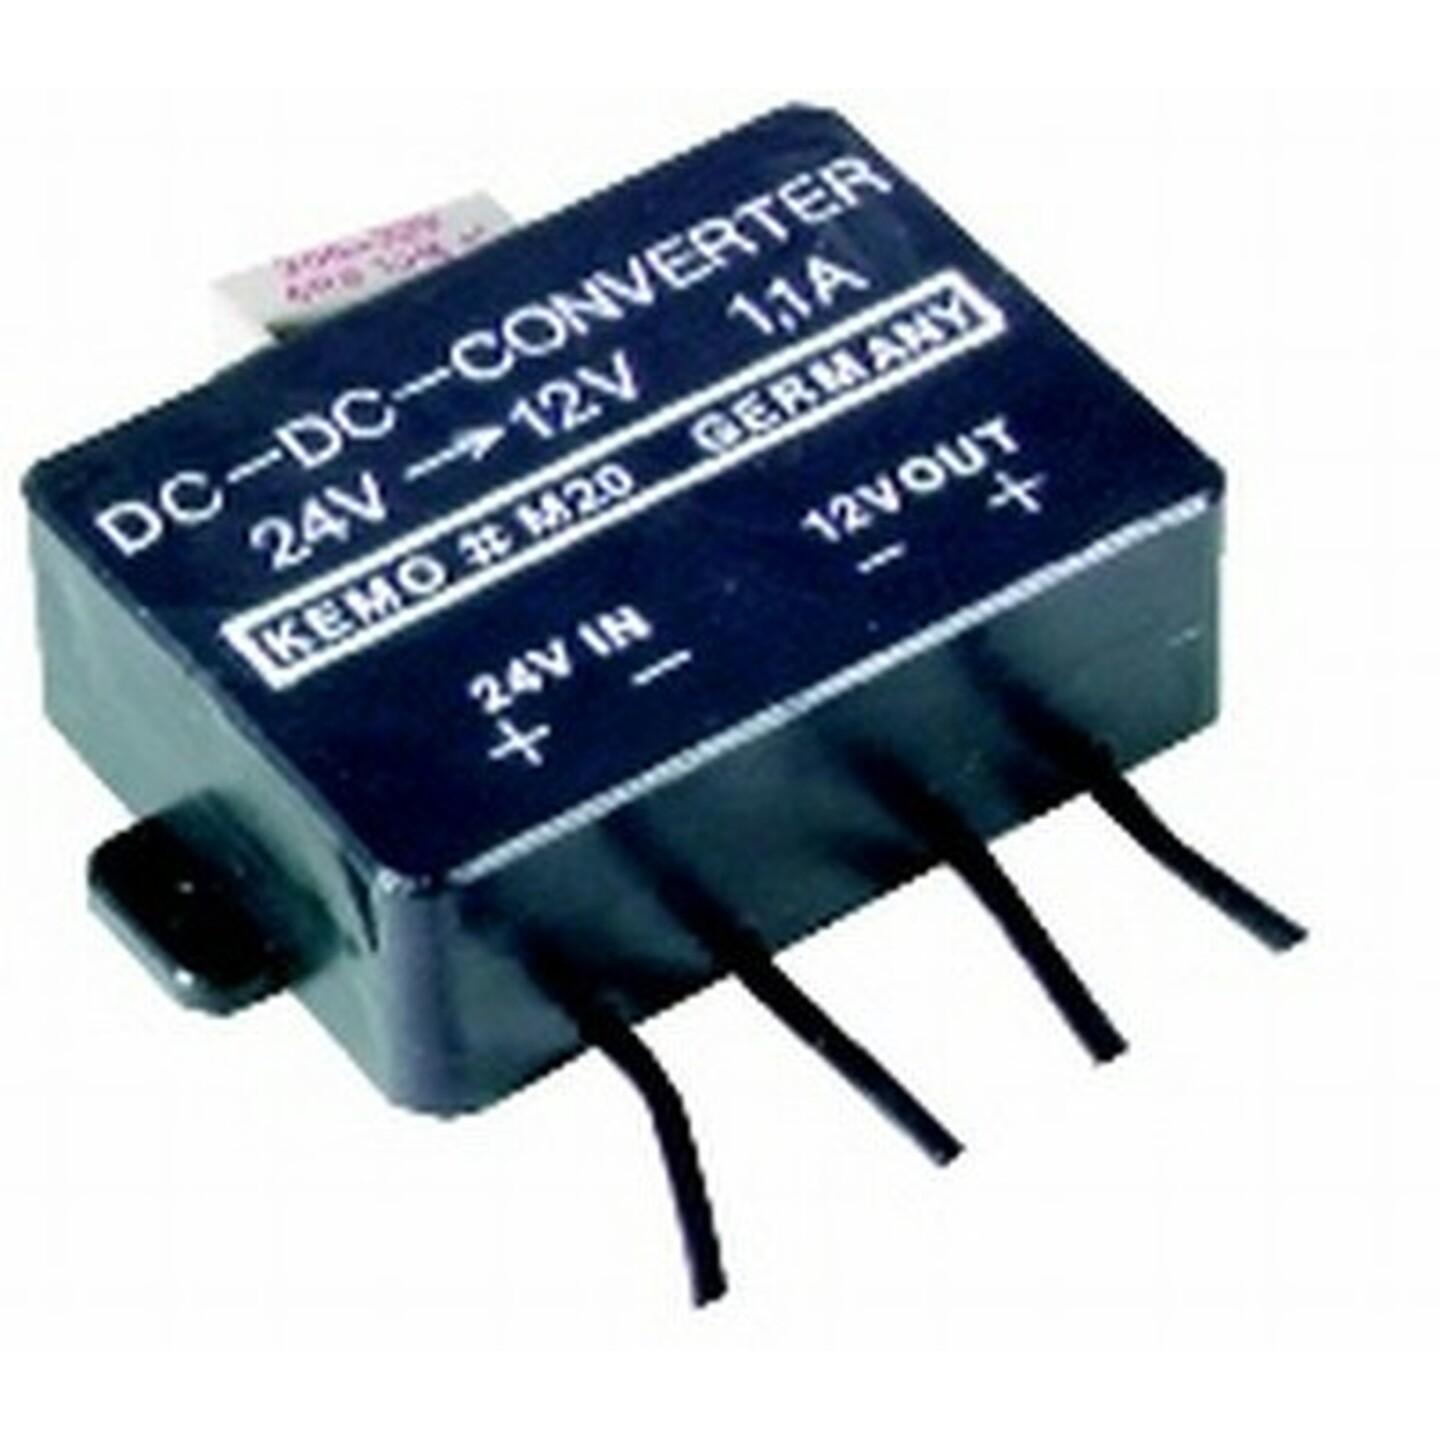 24-12V 1.1A Converter Module M020